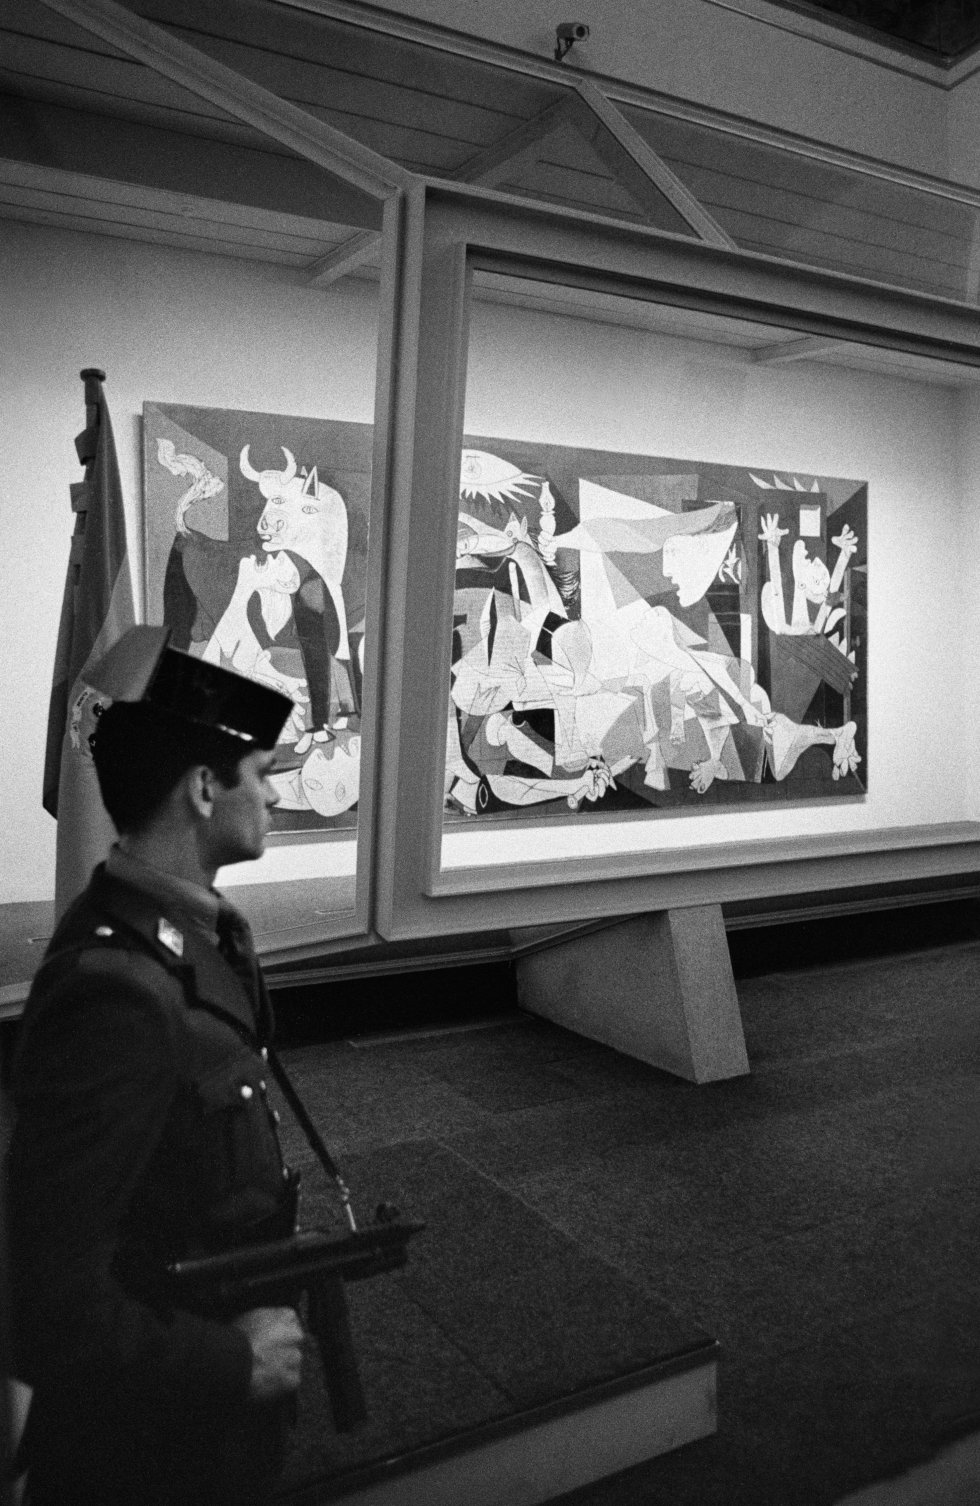 El 'Guernica', de Picasso, vigilado por un guardia civil en el Casón del Buen Retiro, en Madrid, durante la presentación por la vuelta de la obra a España. La imagen fue tomada el 23 de octubre de 1981.